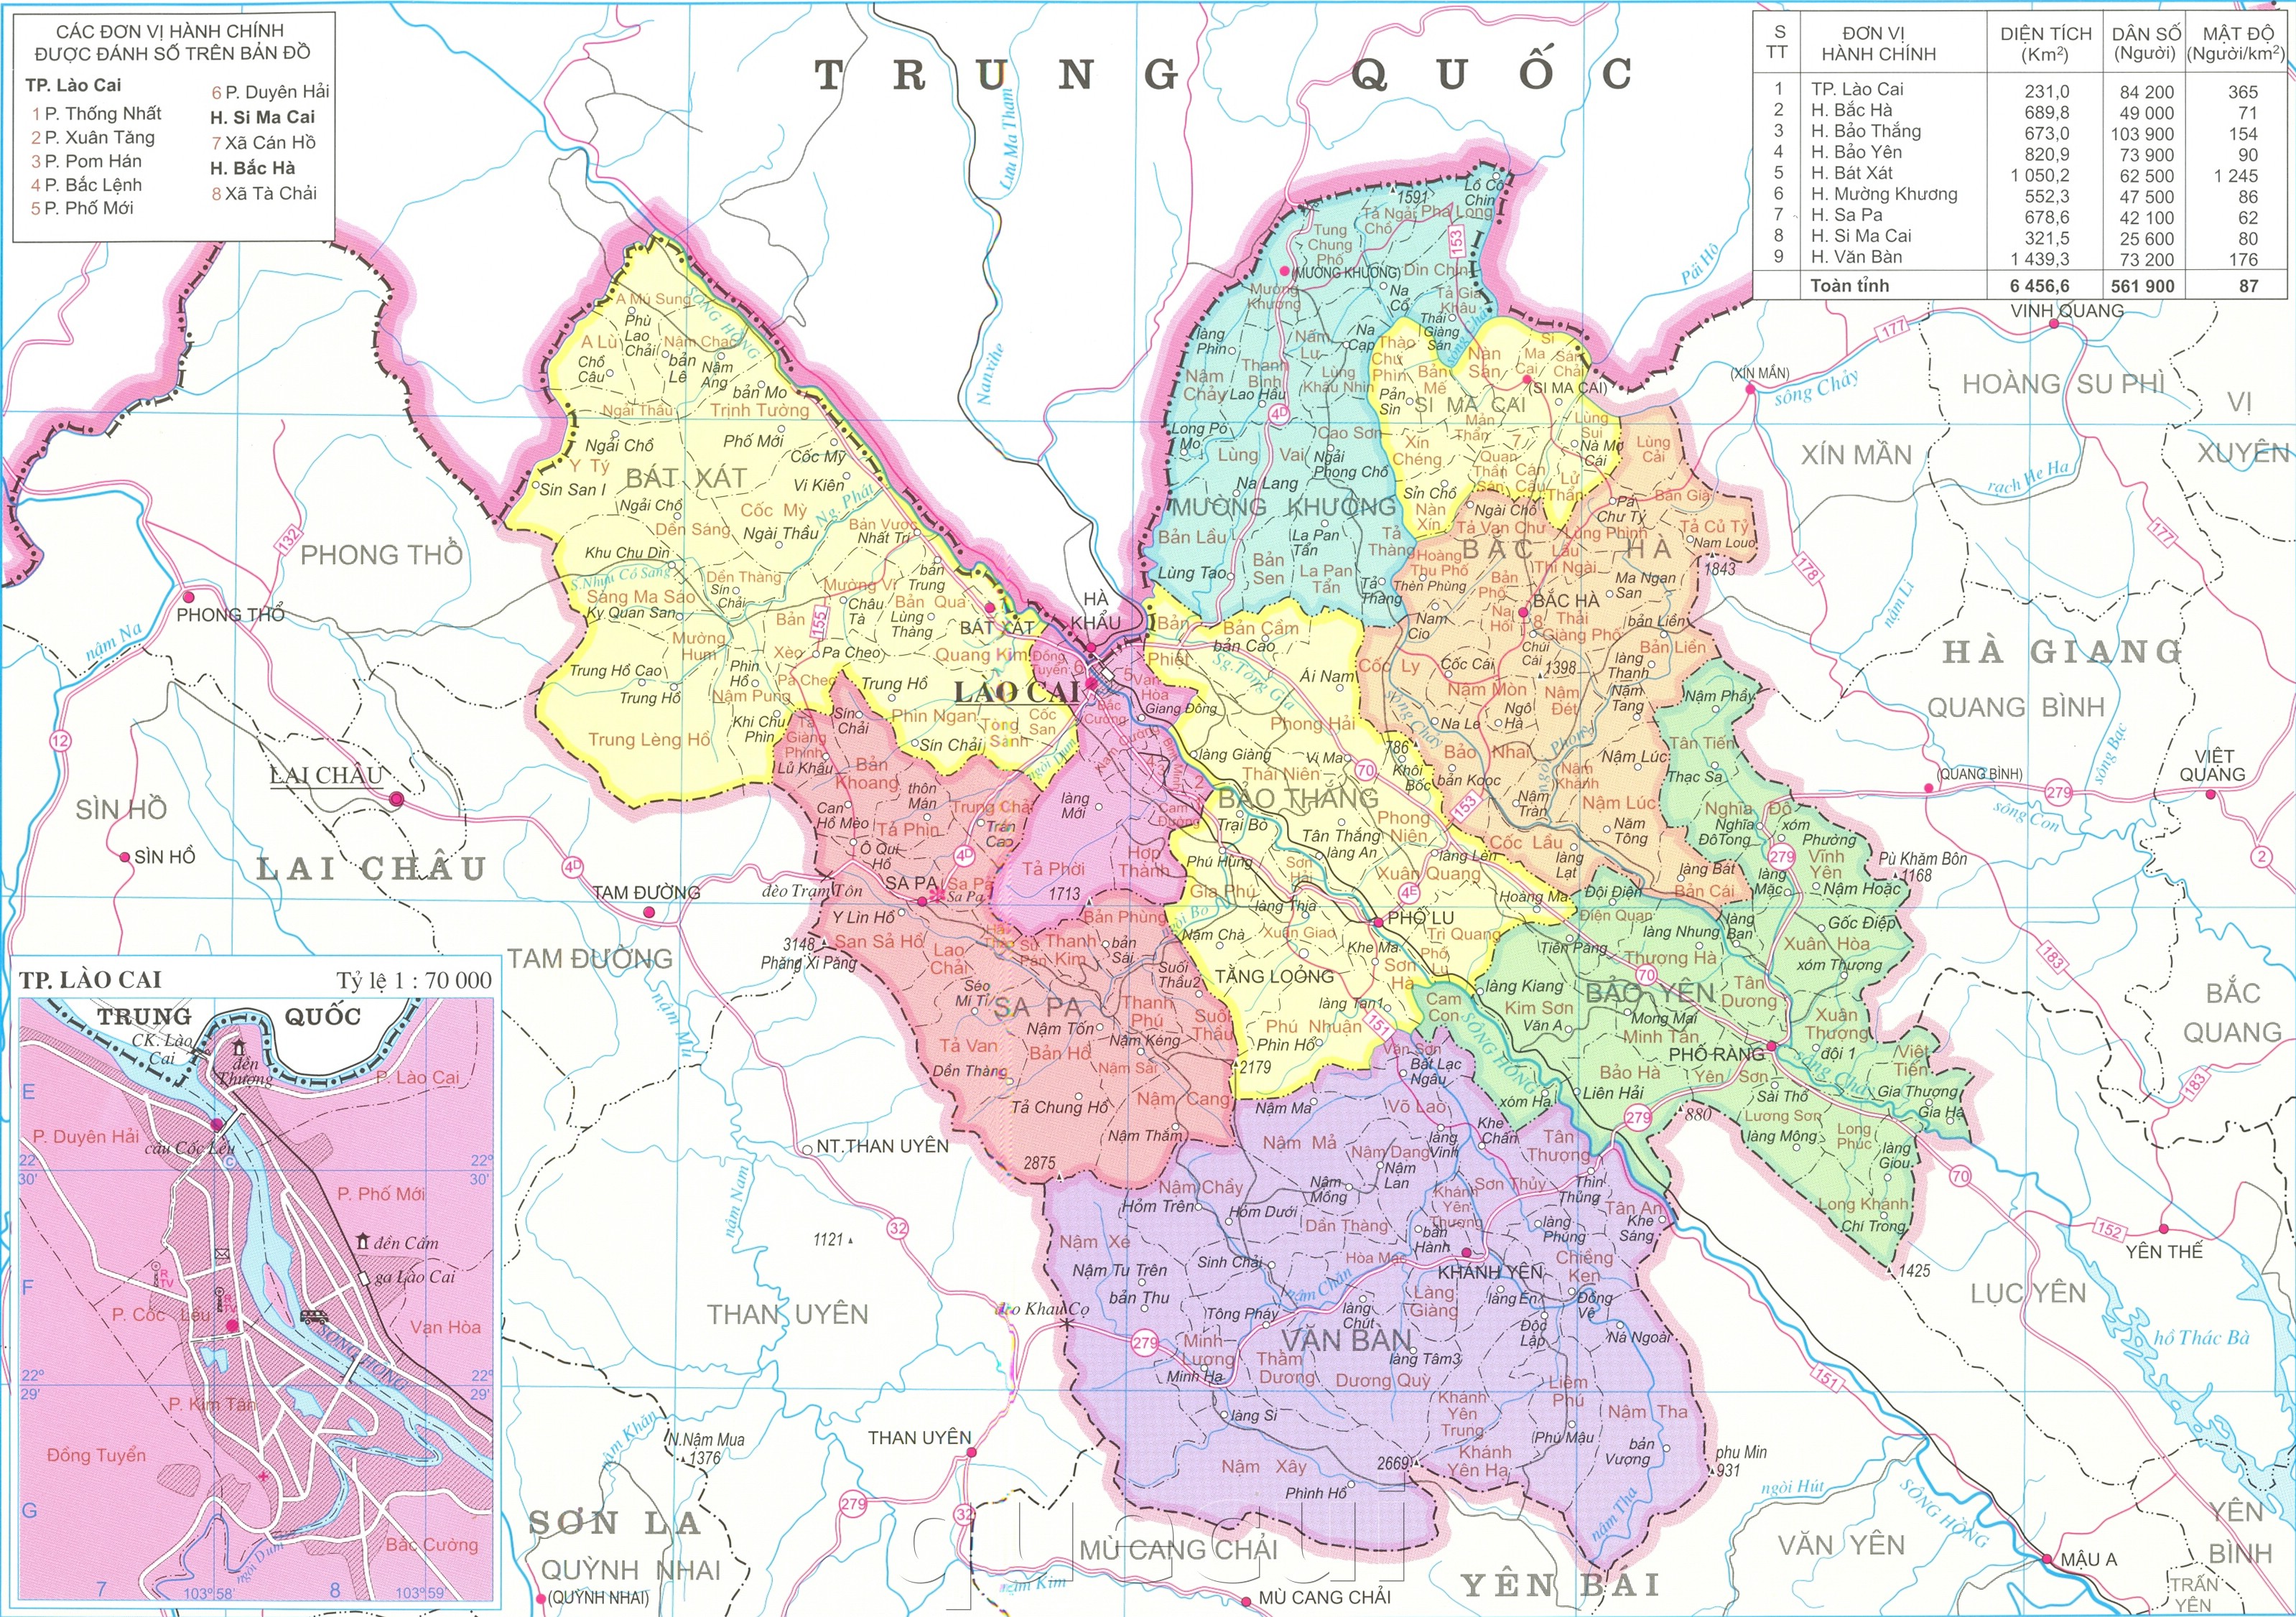 Bản đồ tỉnh Lào Cai năm 2024 rực rỡ sắc màu và cập nhật thông tin mới nhất về địa điểm du lịch, cơ sở hạ tầng, địa giới hành chính và các khu công nghiệp. Cùng đắm mình trong không gian thiên nhiên tươi đẹp của vùng núi phía Bắc với bản đồ Lào Cai đầy đủ nhất.